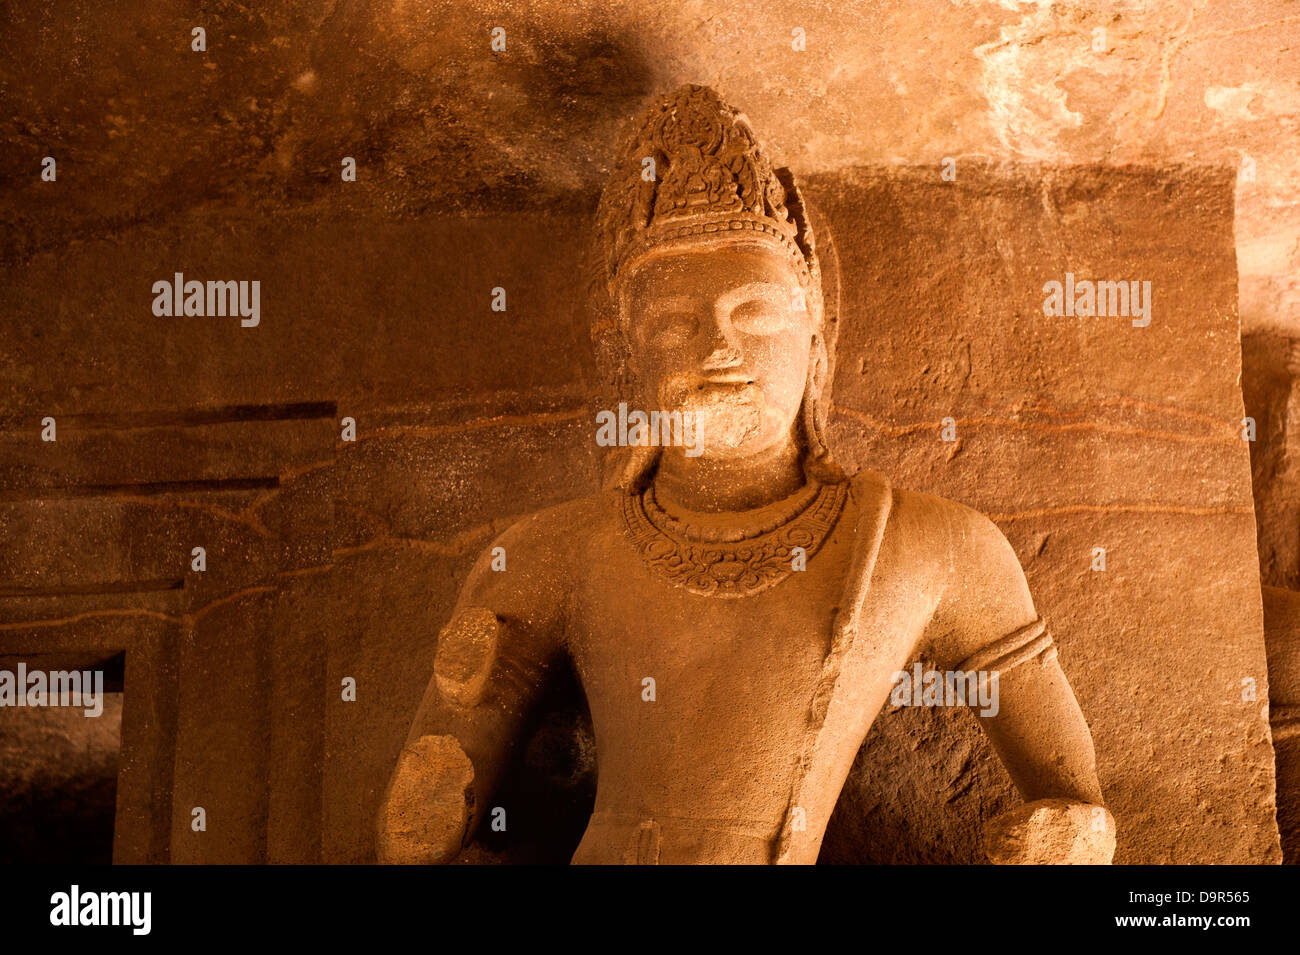 Statue at Elephanta Caves, Maharashtra, India Stock Photo